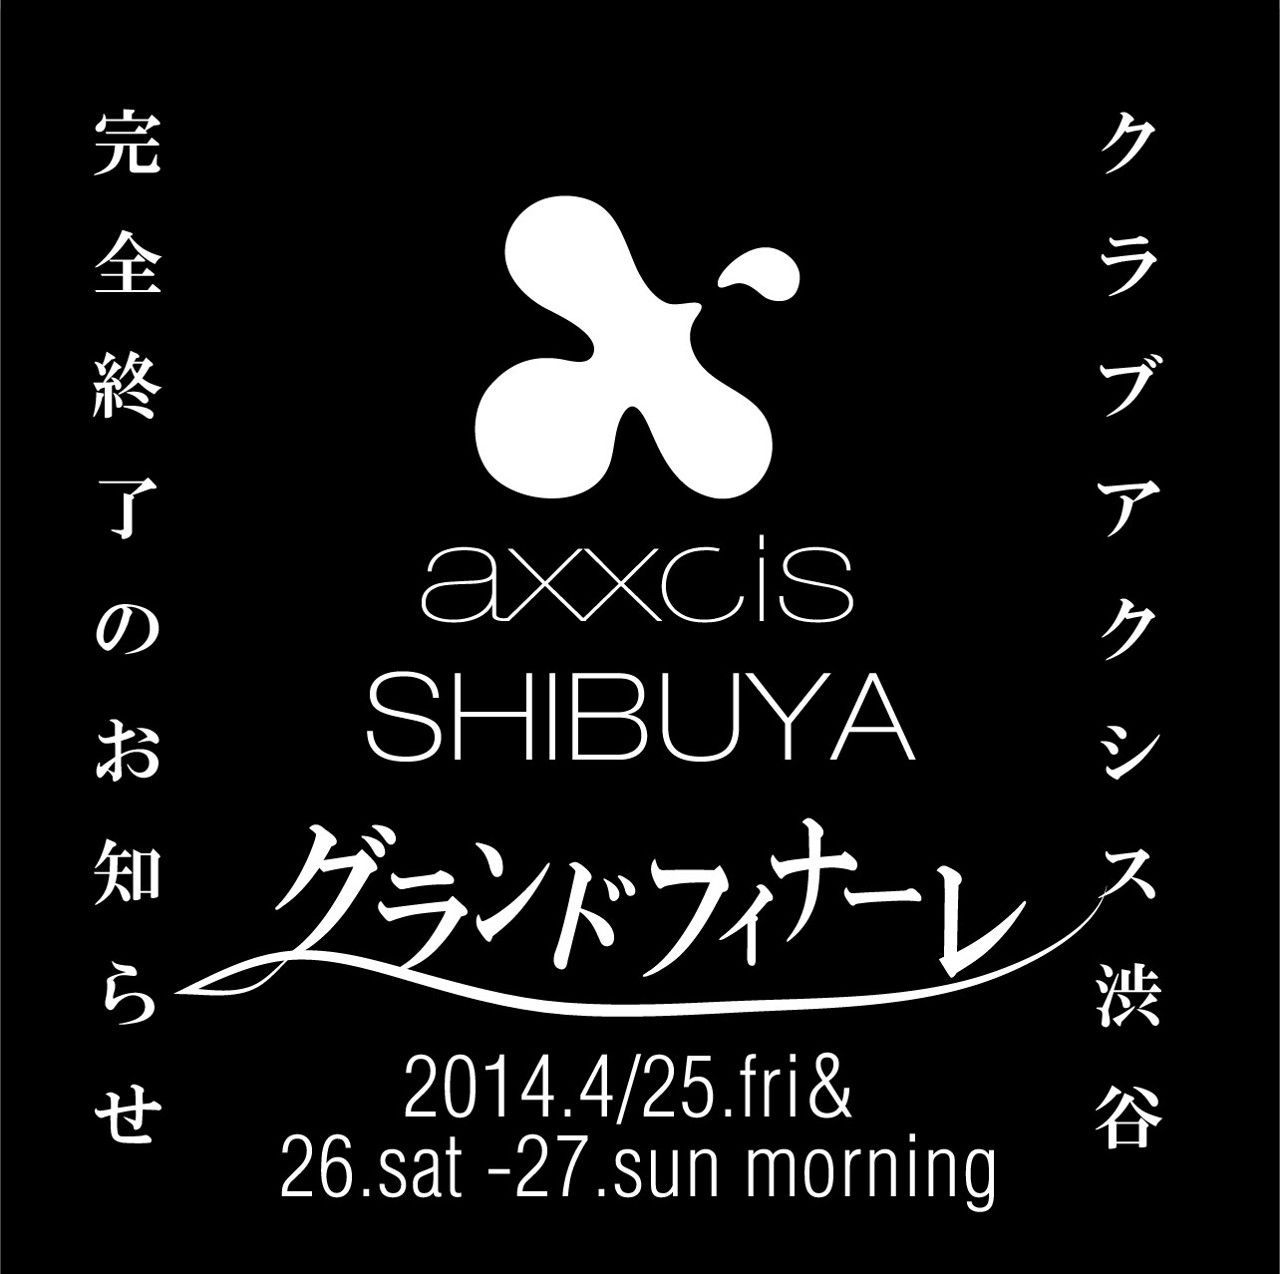 club axxcis SHIBUYA Grand Finale Party!!!  